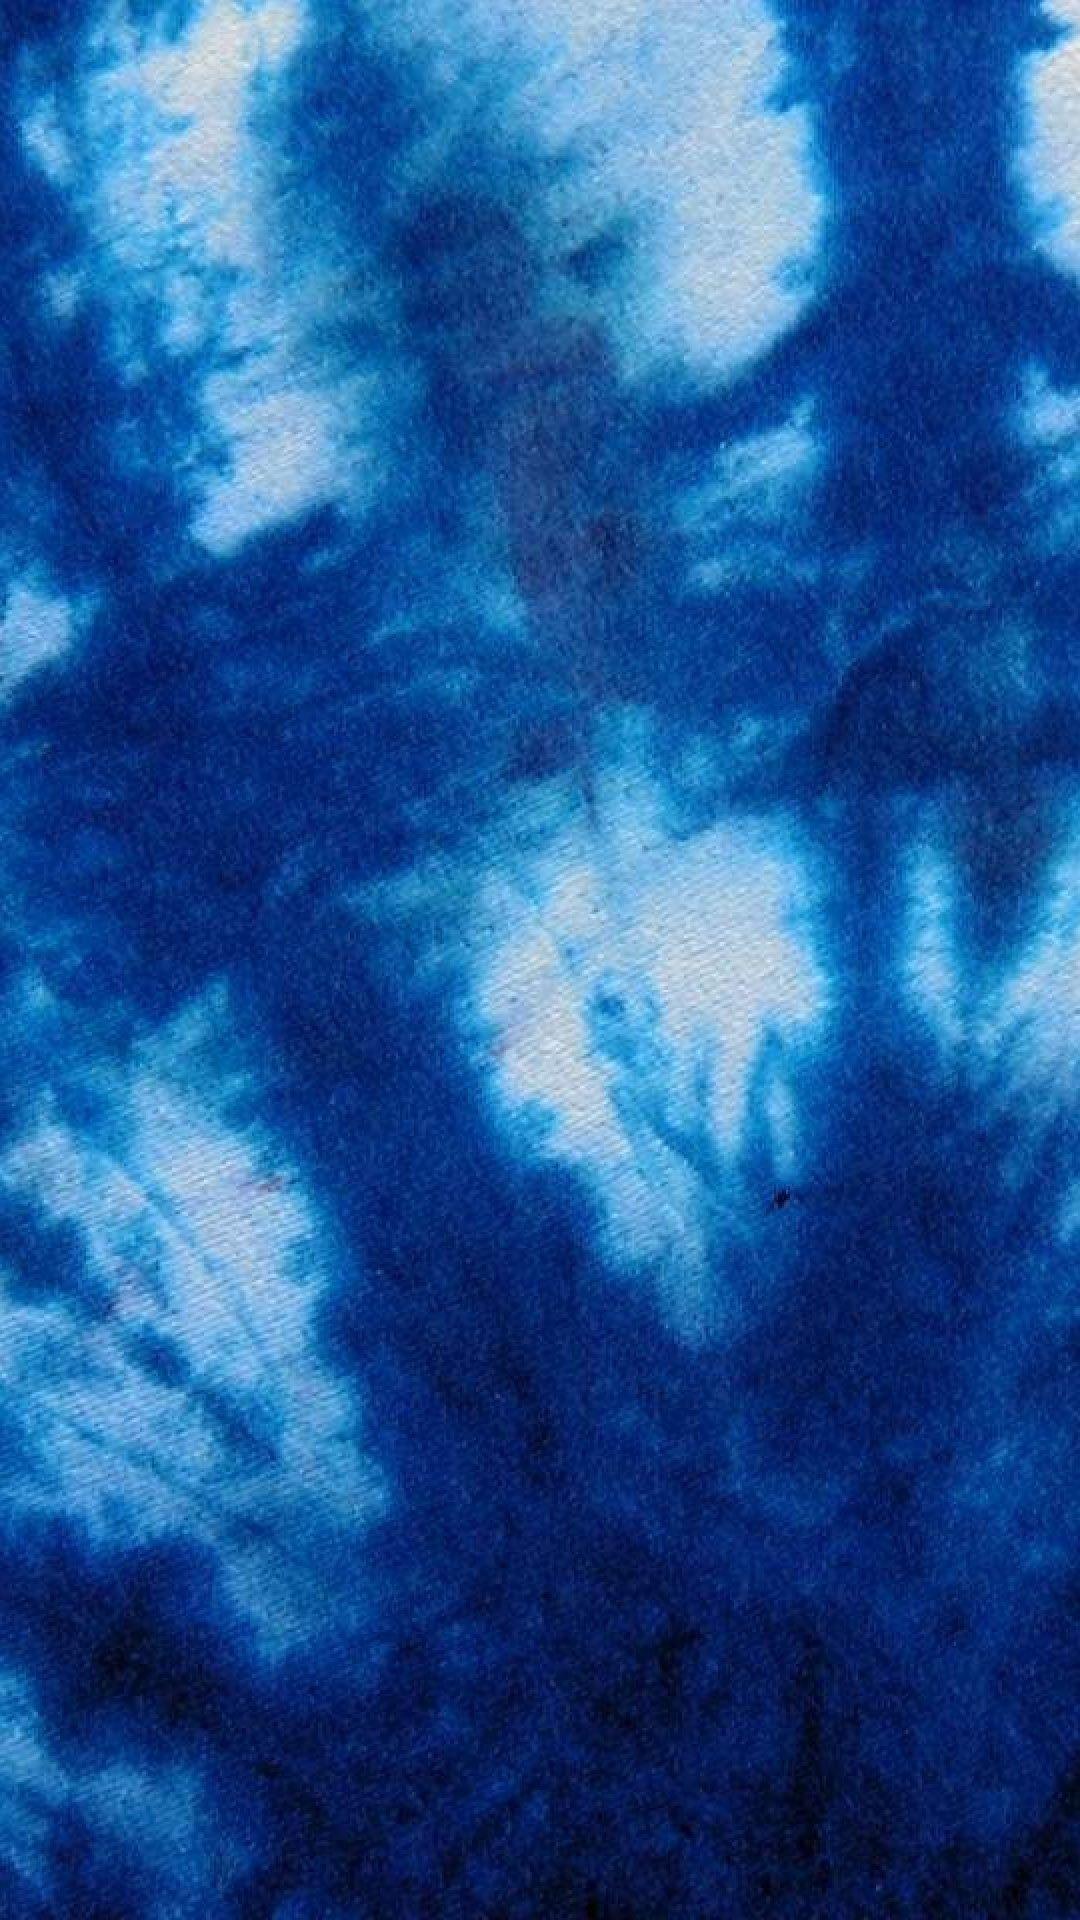 Blue Tie Dye Wallpapers - Top Những Hình Ảnh Đẹp